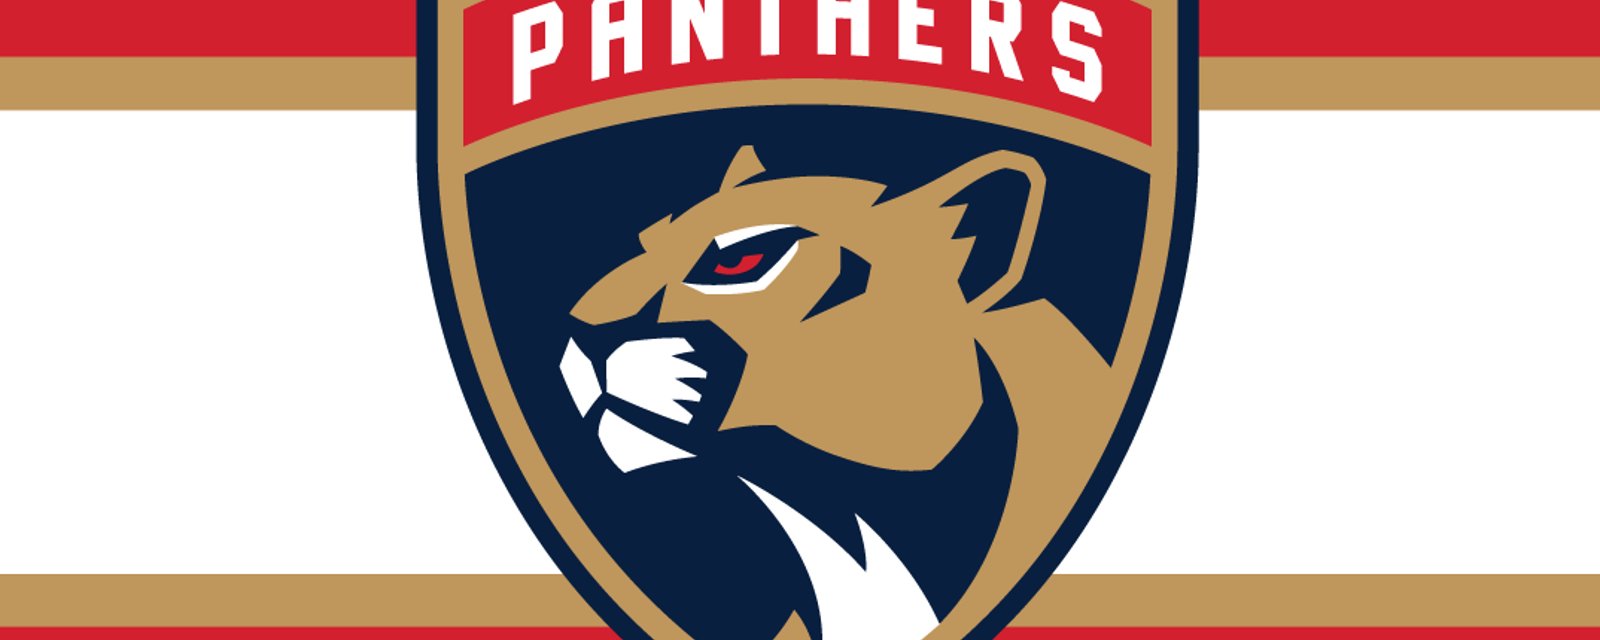 Un artiste fusionne les logos des Panthers et le résultat est à couper le souffle